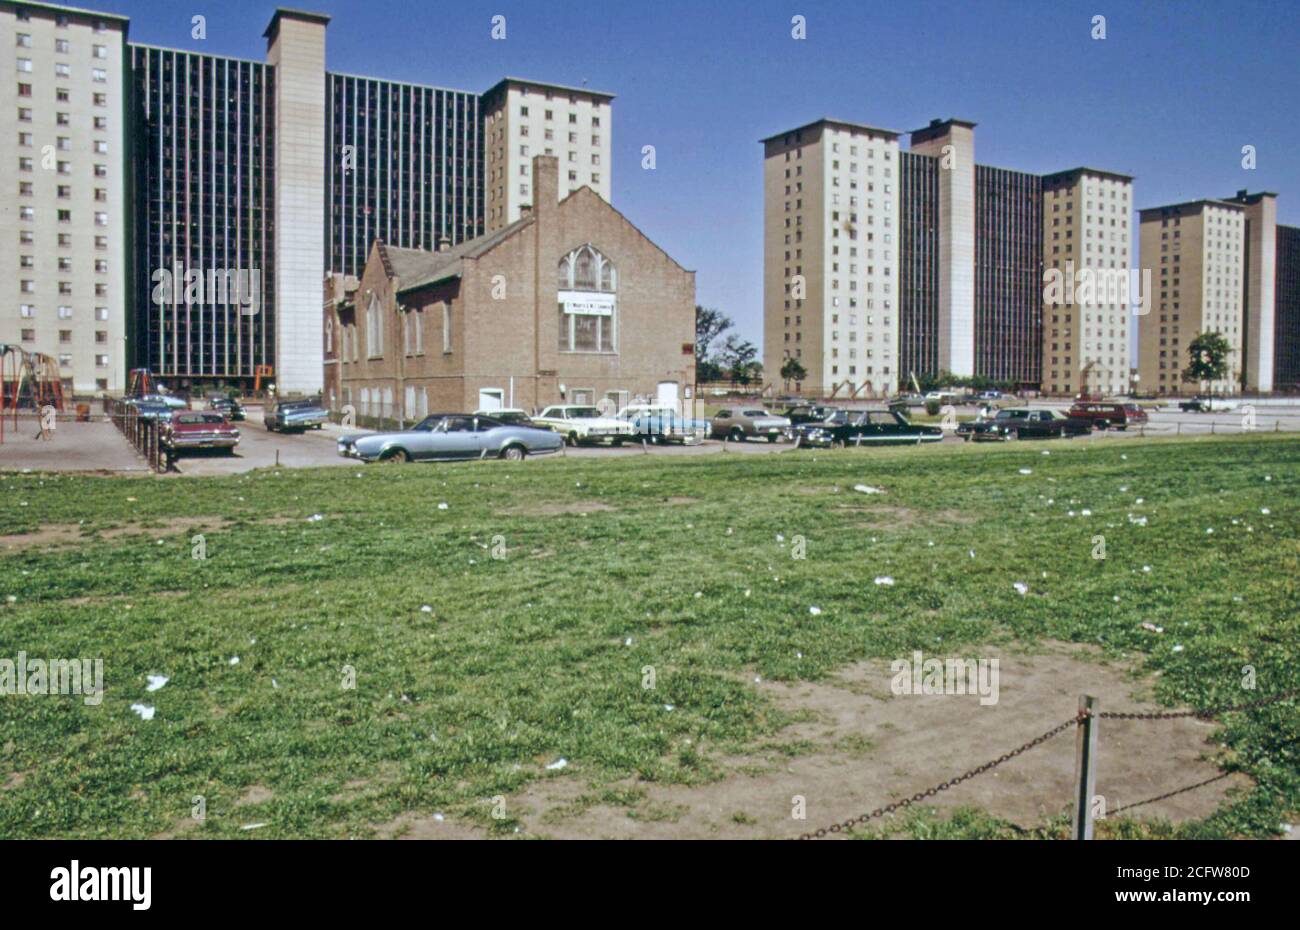 Robert Taylor Homes, un complexe d'appartements d'habitation à faible revenu habité par les Noirs sur le côté sud de Chicago, 06/1973 Banque D'Images